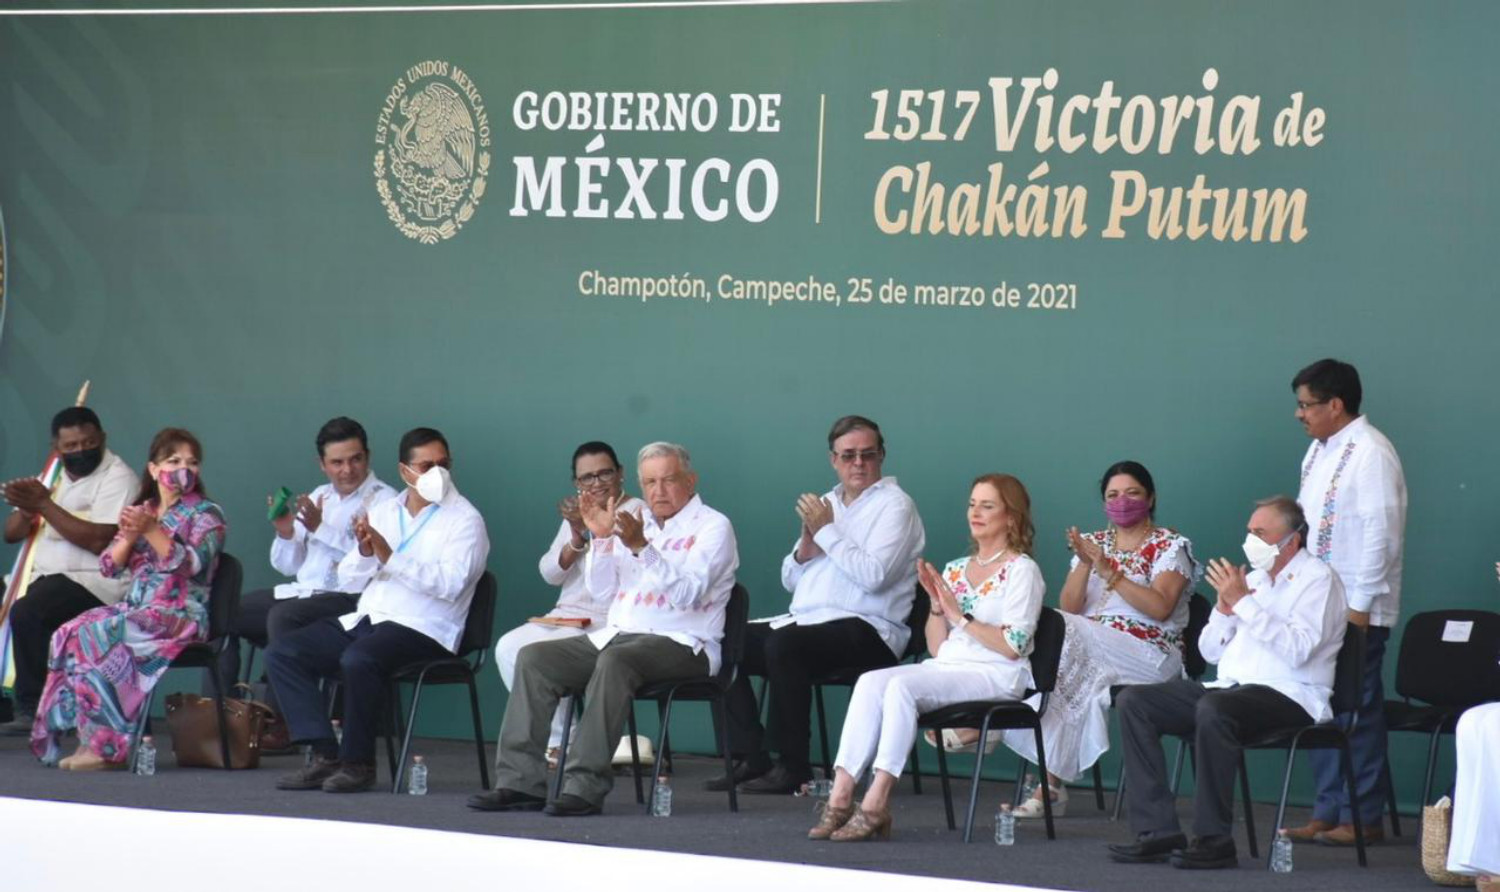 La regeneración de México sólo podrá darse con los valores morales de los pueblos indígenas